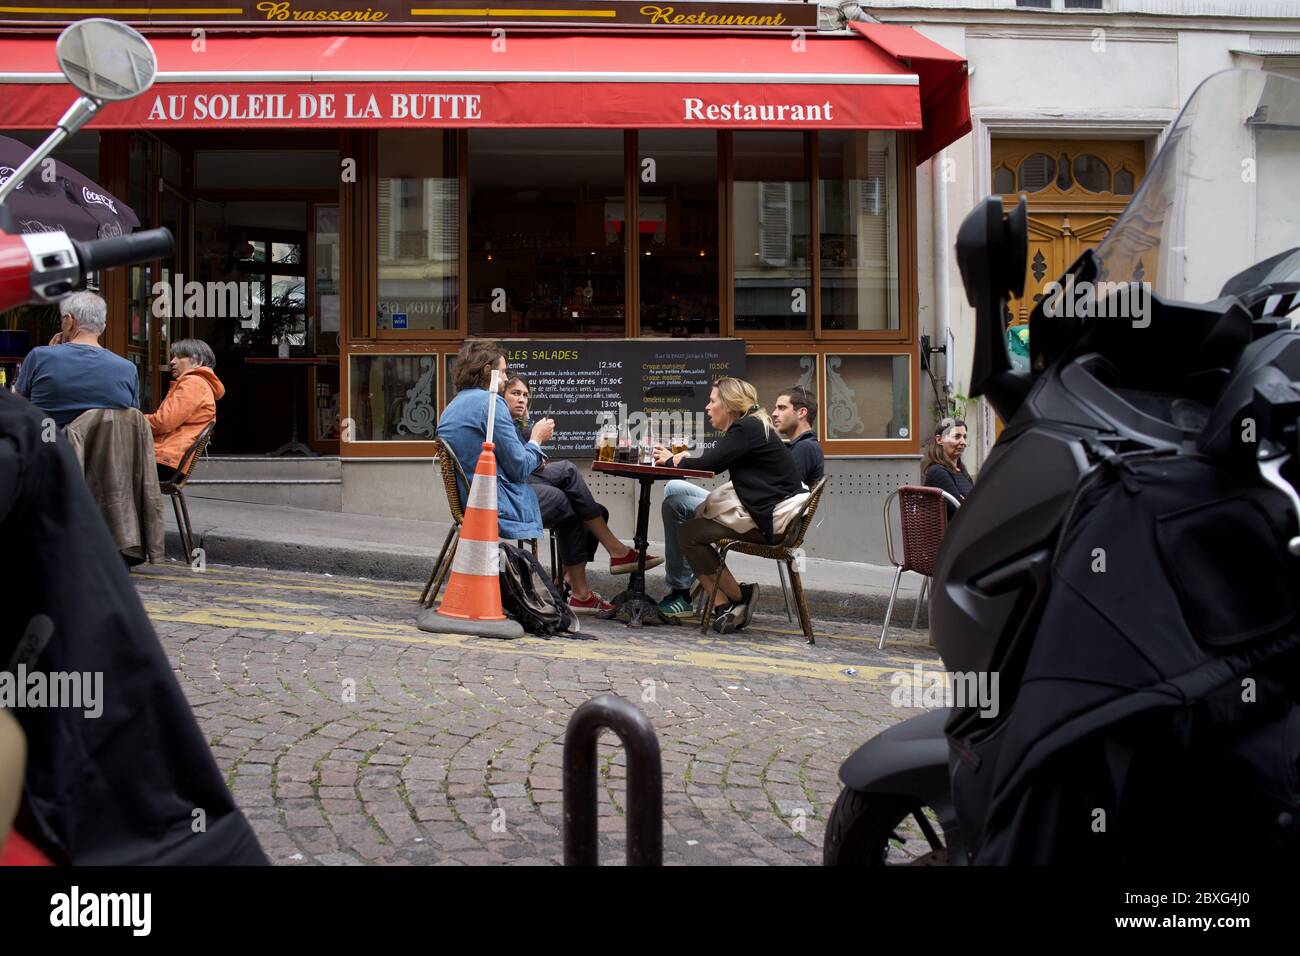 La gente può gustare un drink in una caffetteria temporanea terrazza, in un parcheggio, nella vita dopo la chiusura - Rue Muller, Montmartre, 75018 Parigi, Francia Foto Stock